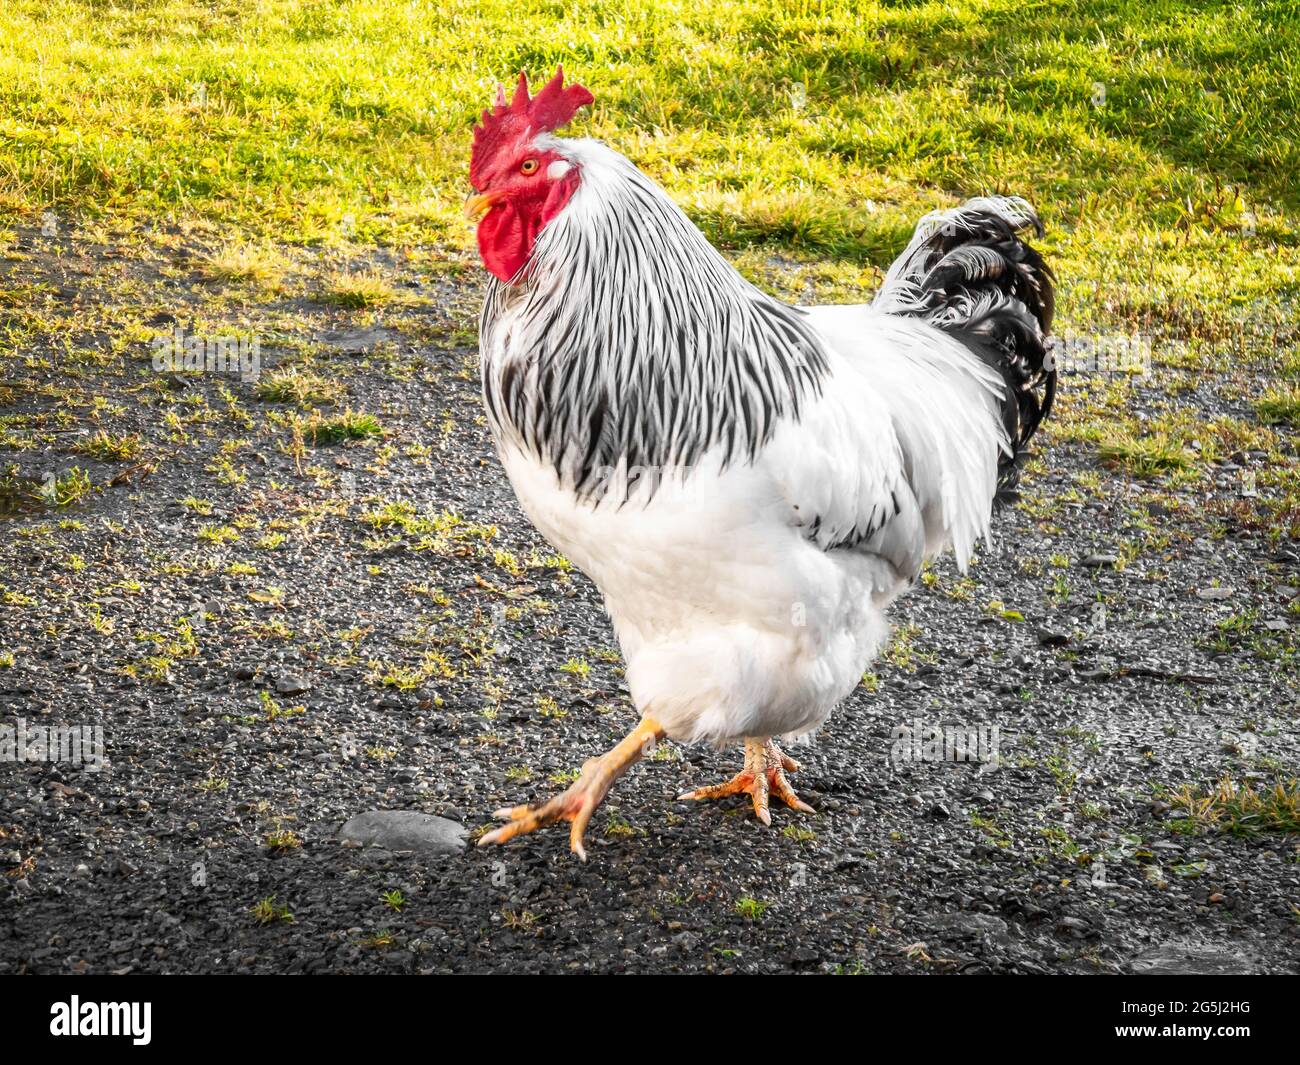 Un gallo grande y saludable, libre de jaulas, con plumas blancas y negras y peine rojo caminando afuera en verano de césped verde rural natural Foto de stock